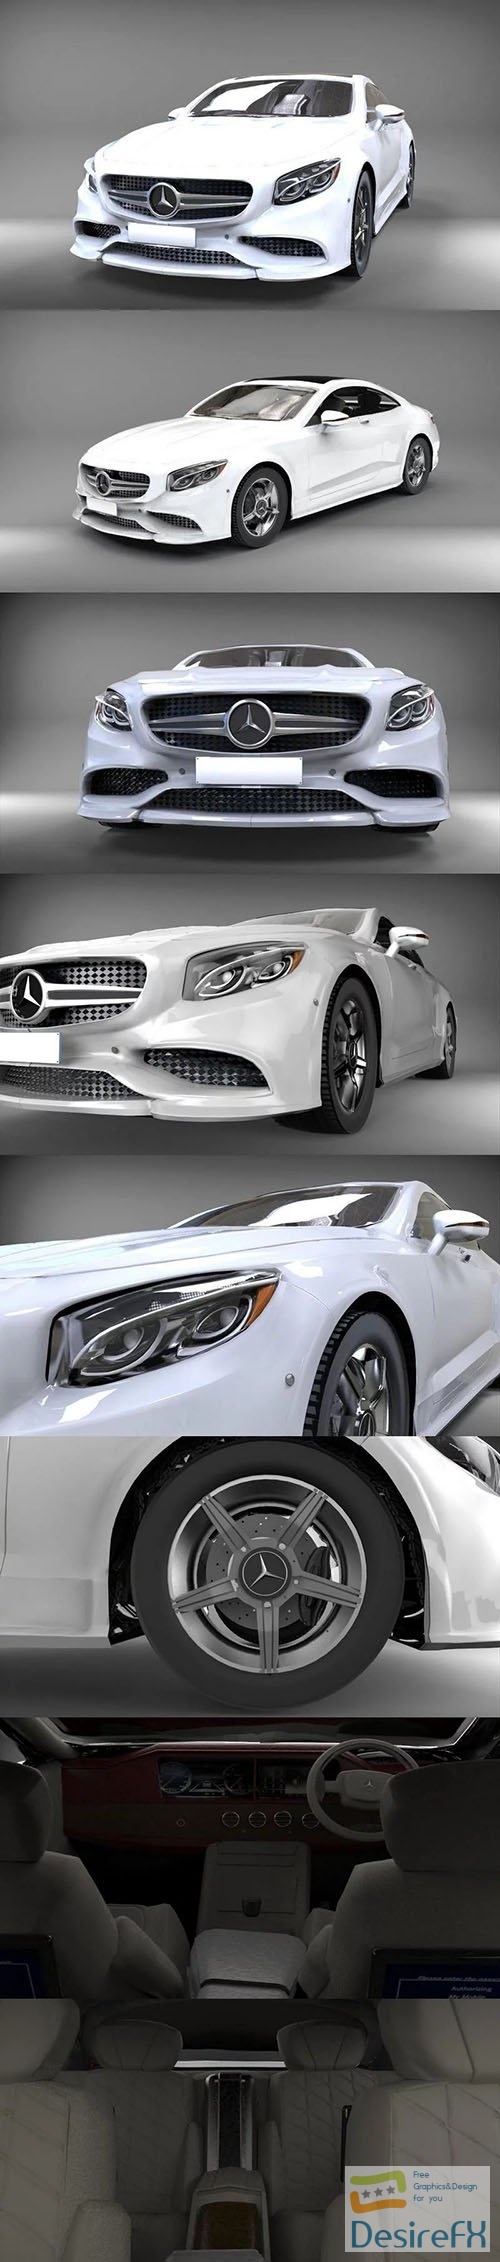 Mercedes benz s63 - 3d model